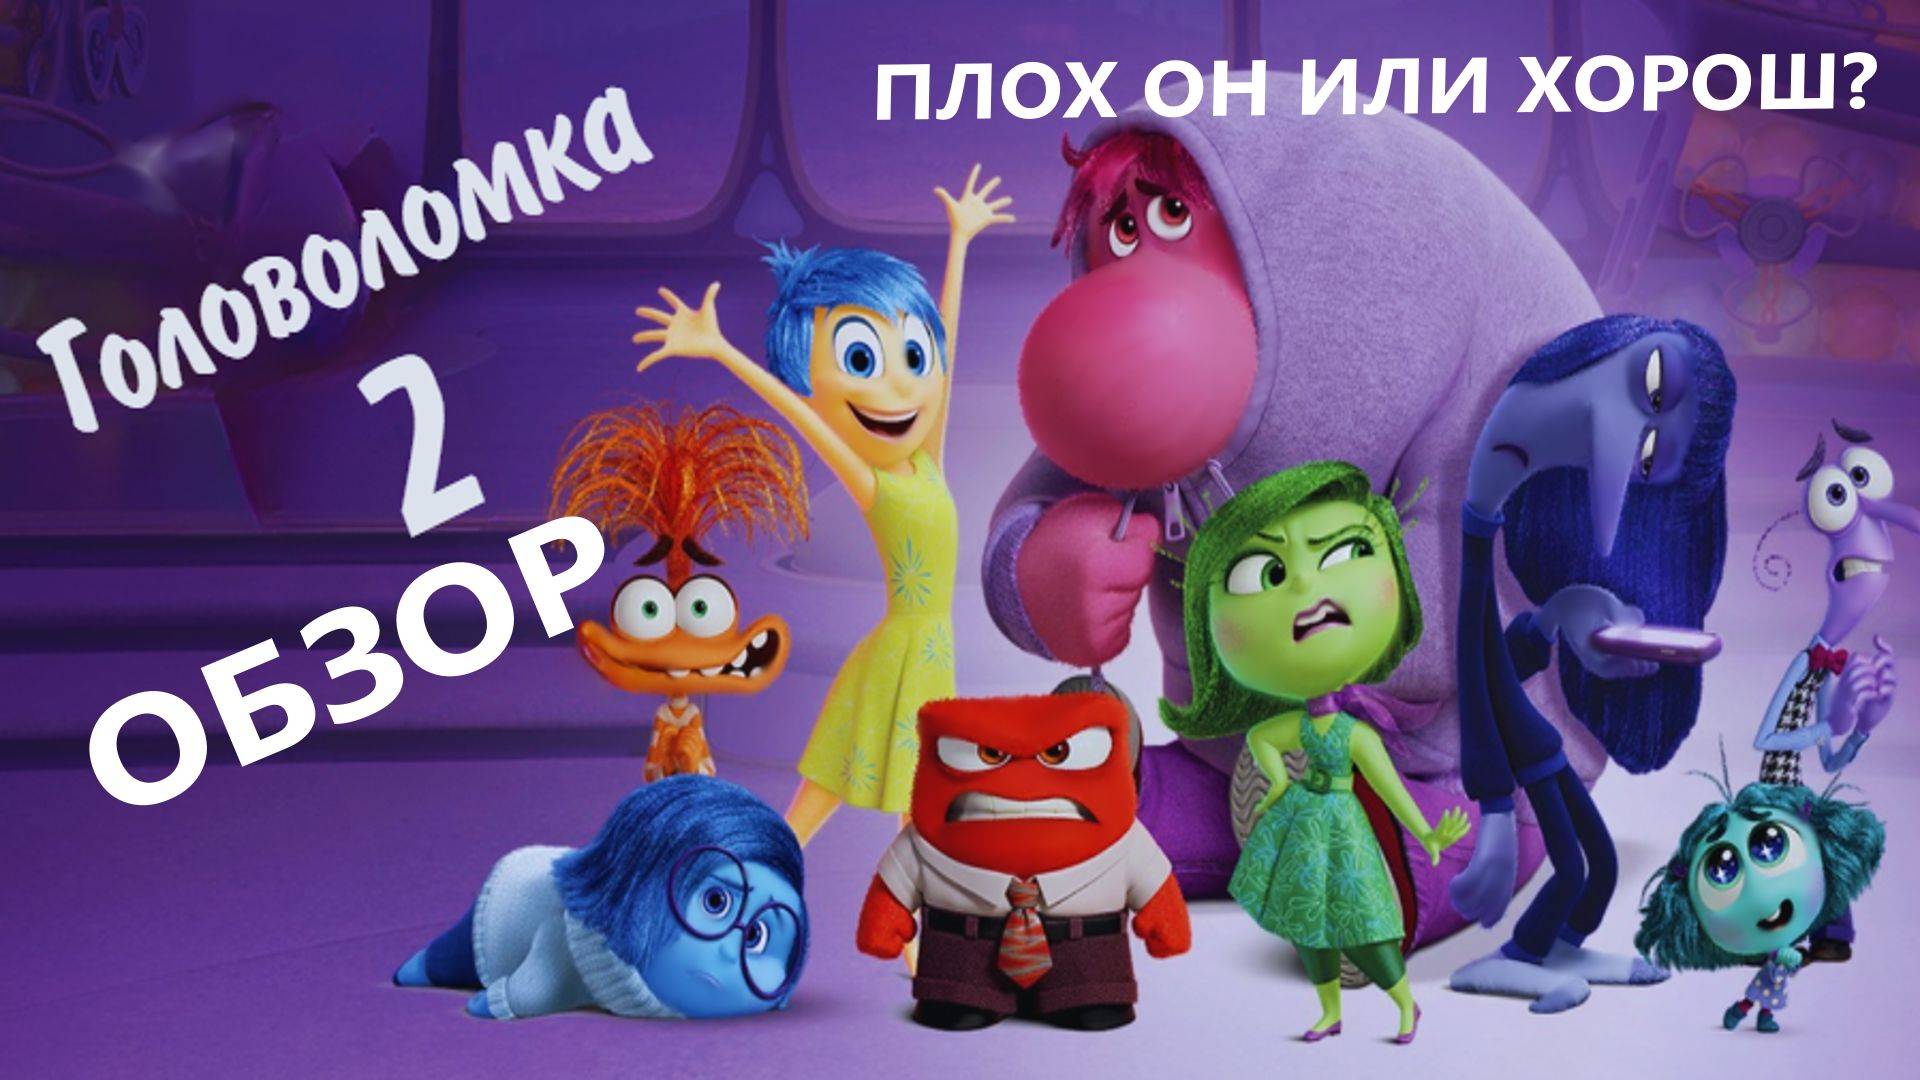 Головоломка 2 - ОБЗОР - Каким вышло продолжение легендарного мультфильма? - Pixar